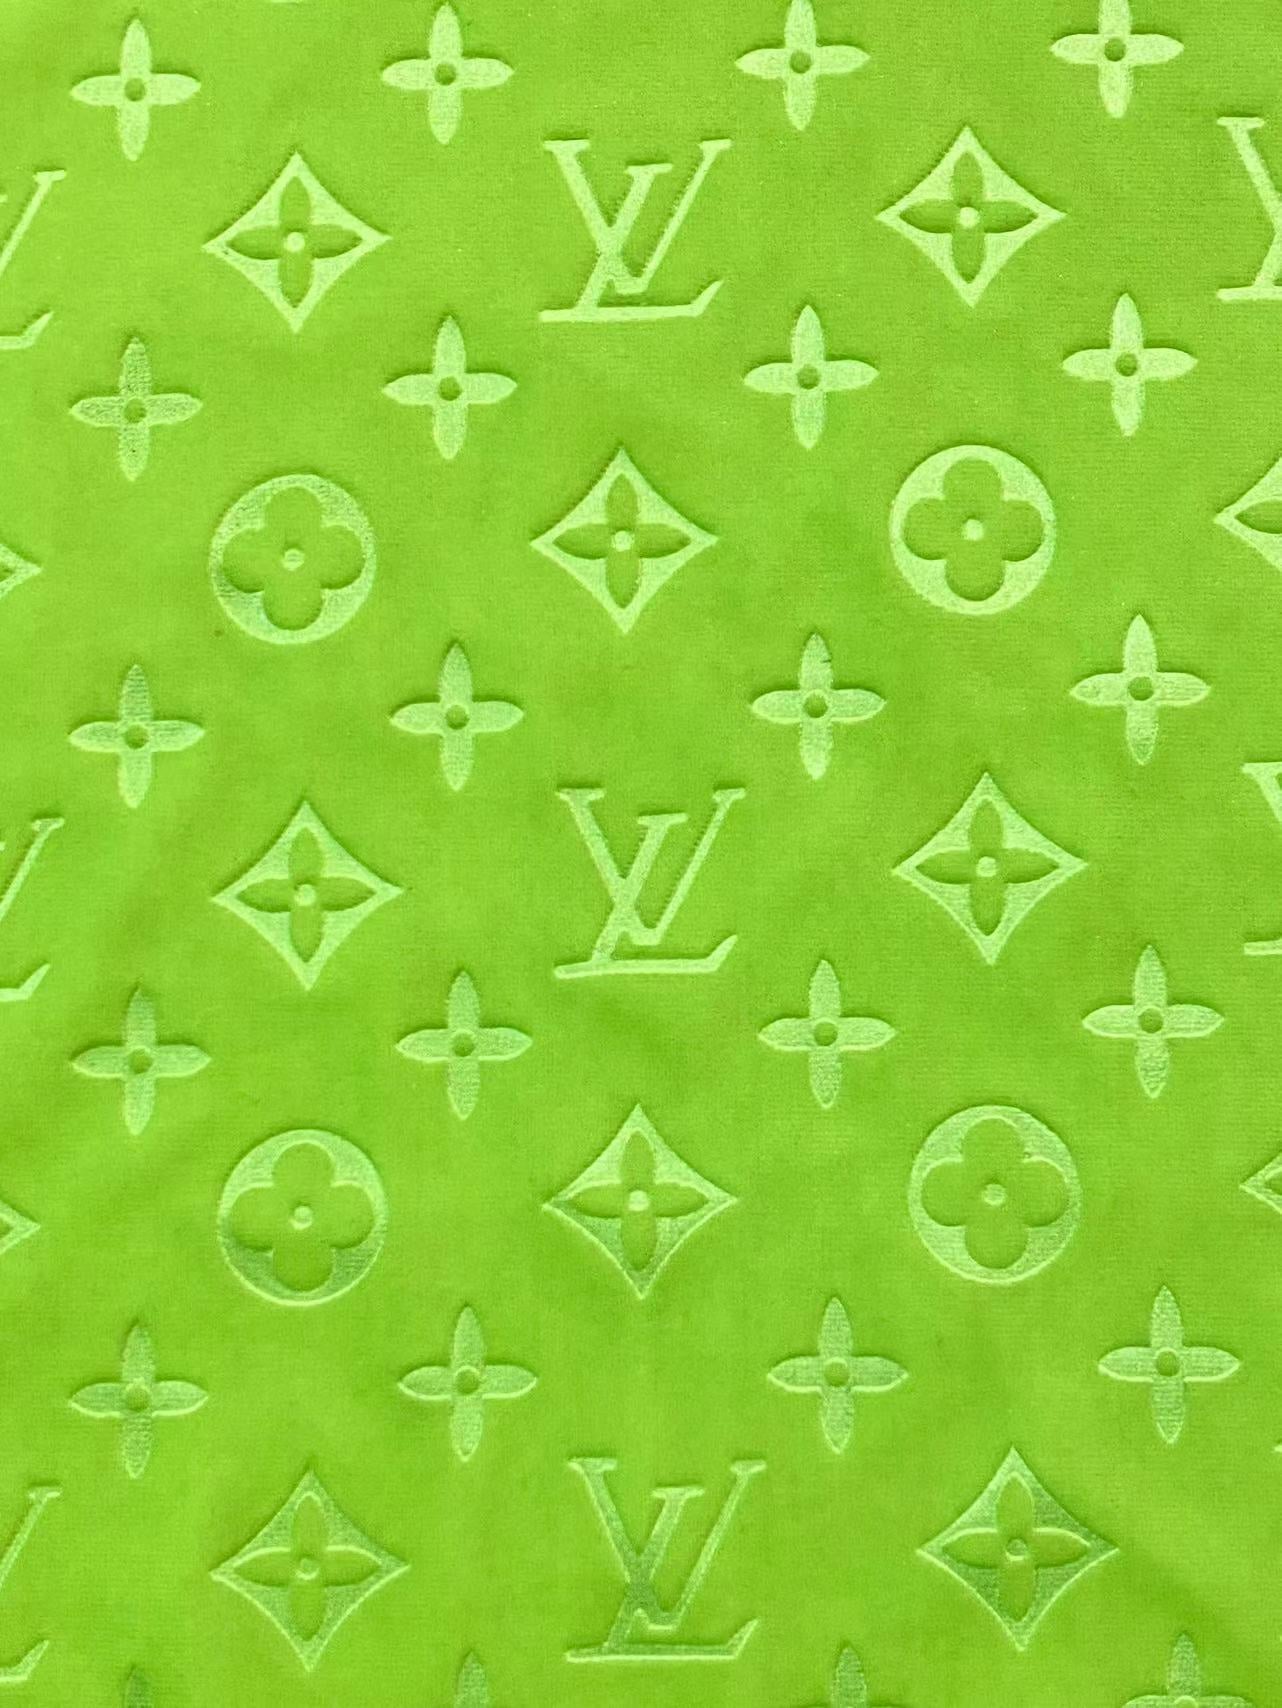 Luxury Soft Touch Neon Green LV Velvet Fabric for Custom Sneaker Sewing Car Upholstery